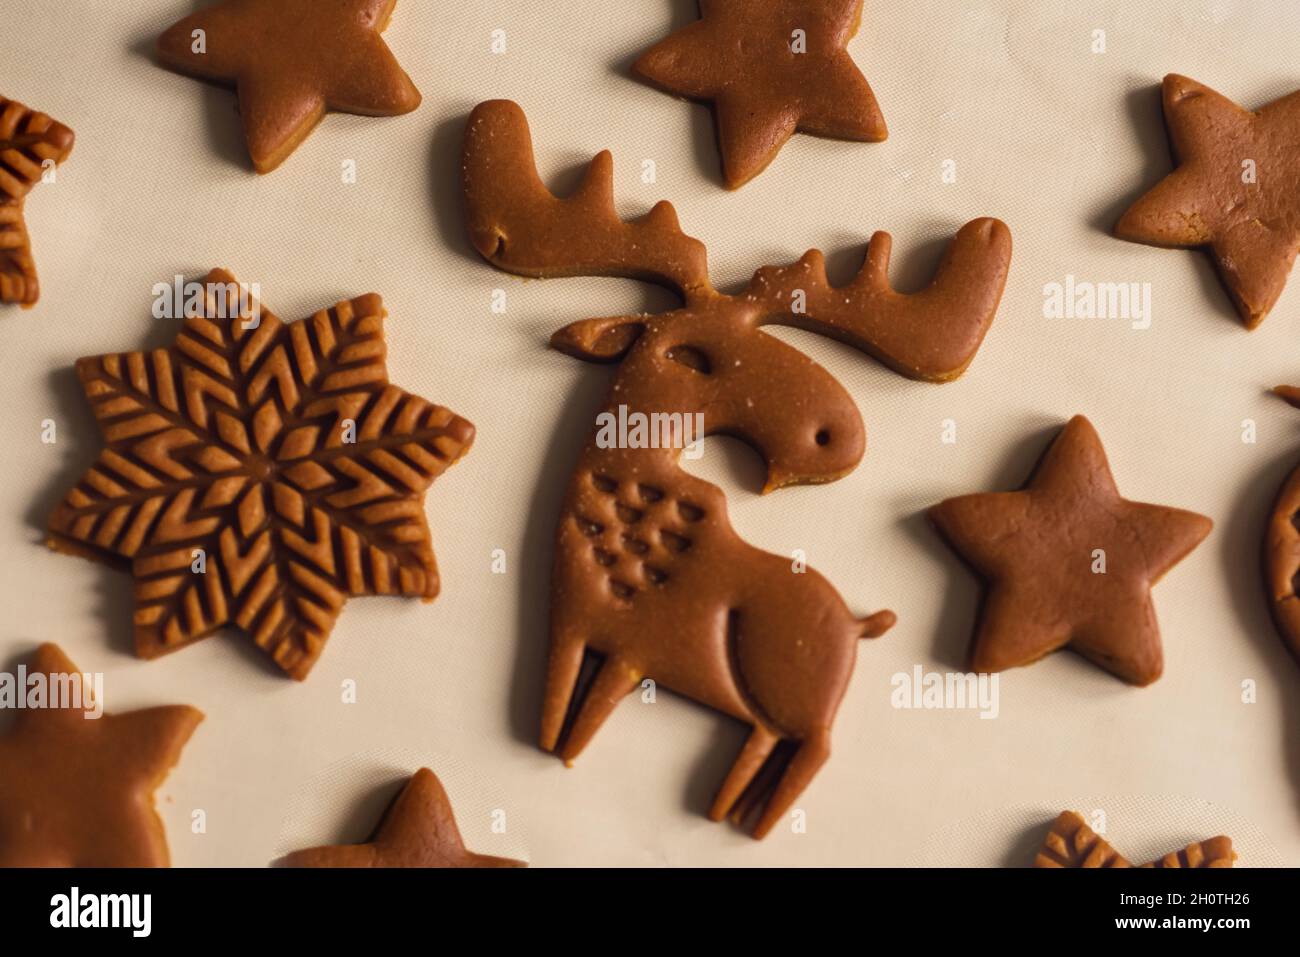 Motif de biscuits de pain d'épice de Noël sous forme d'animaux, flocons de neige Banque D'Images